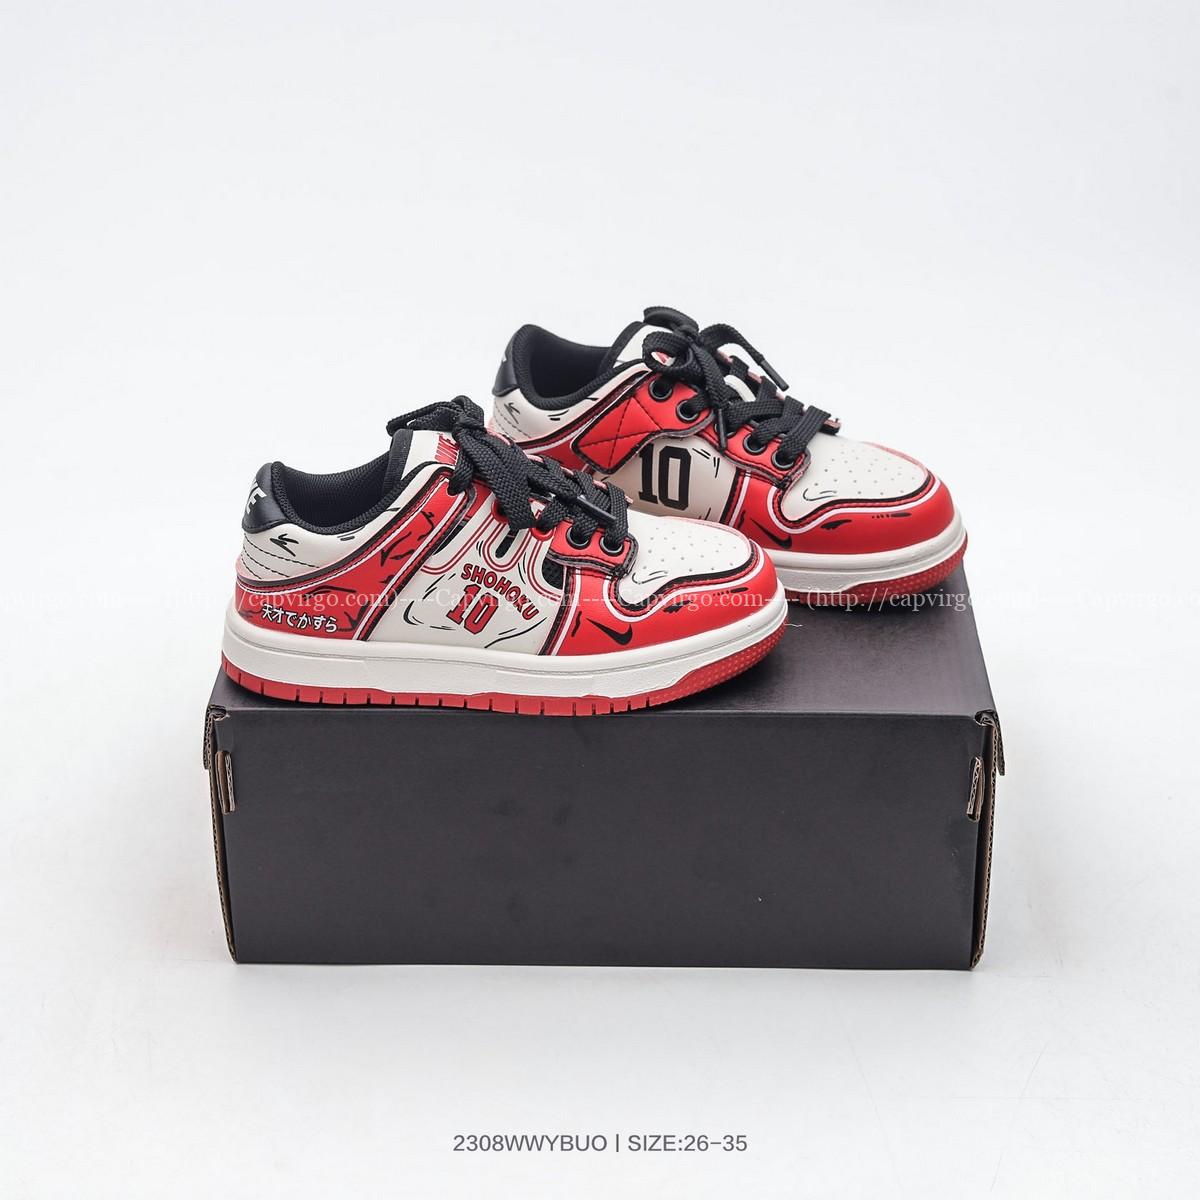 Giày Jordan trẻ em mẫu mới SHOHOKU màu đỏ đen